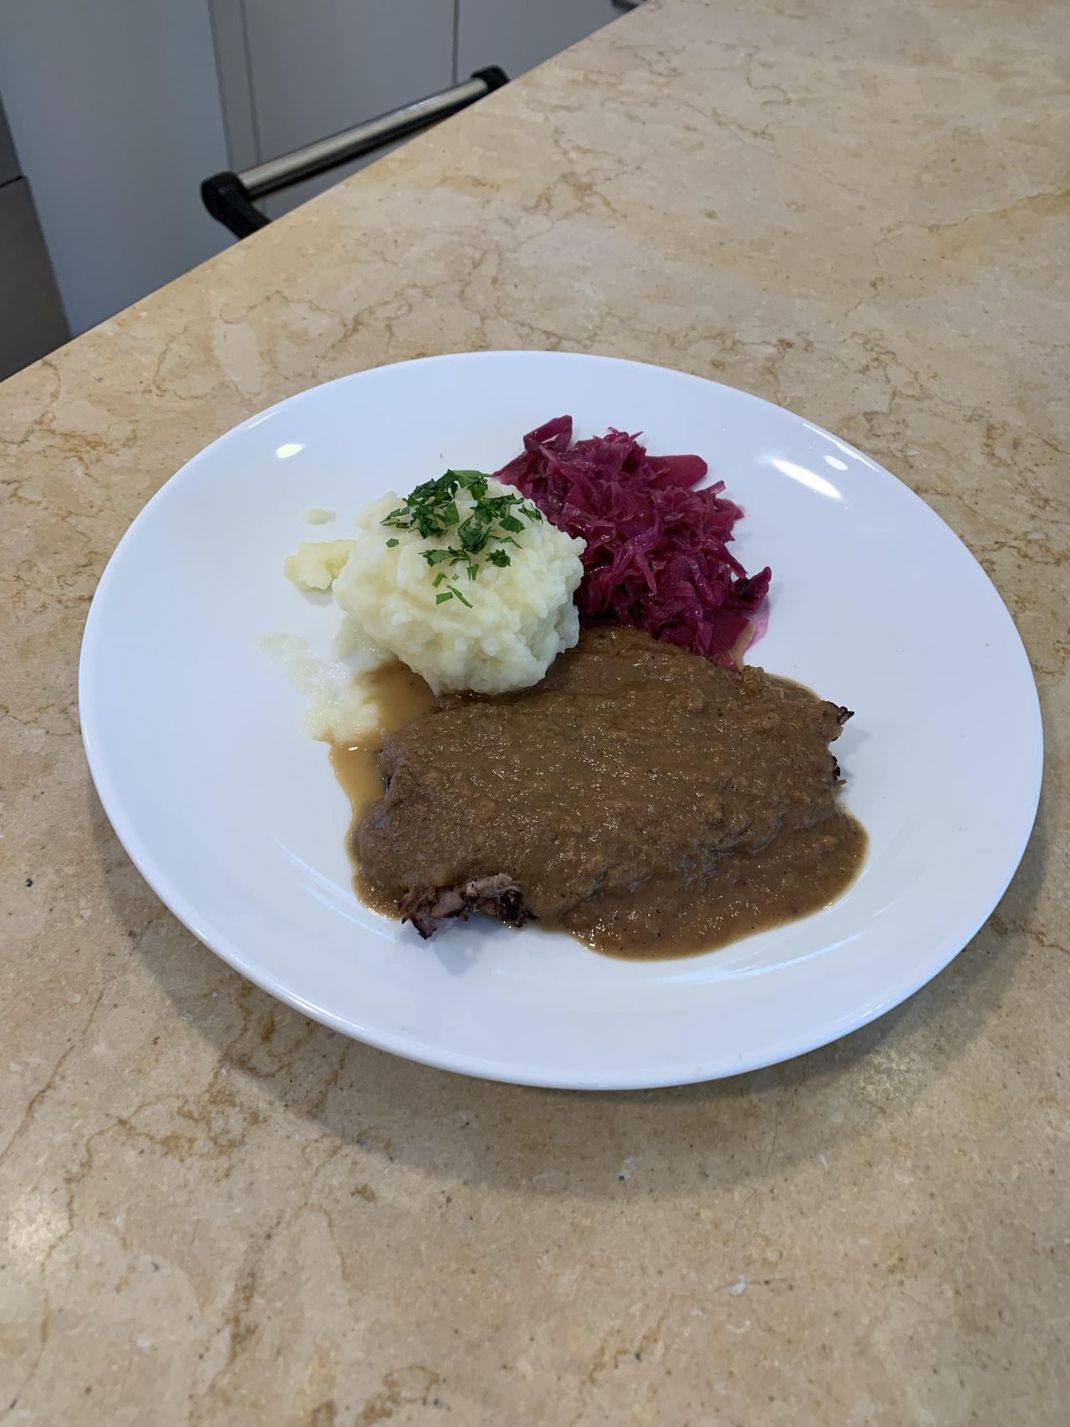 Deutscher Sauerbraten mit Kartoffelklößen und Rotkraut ist ein Klassiker! Mit unserem Rezept kannst du das Traditionsgericht ganz einfach selber nachkochen.